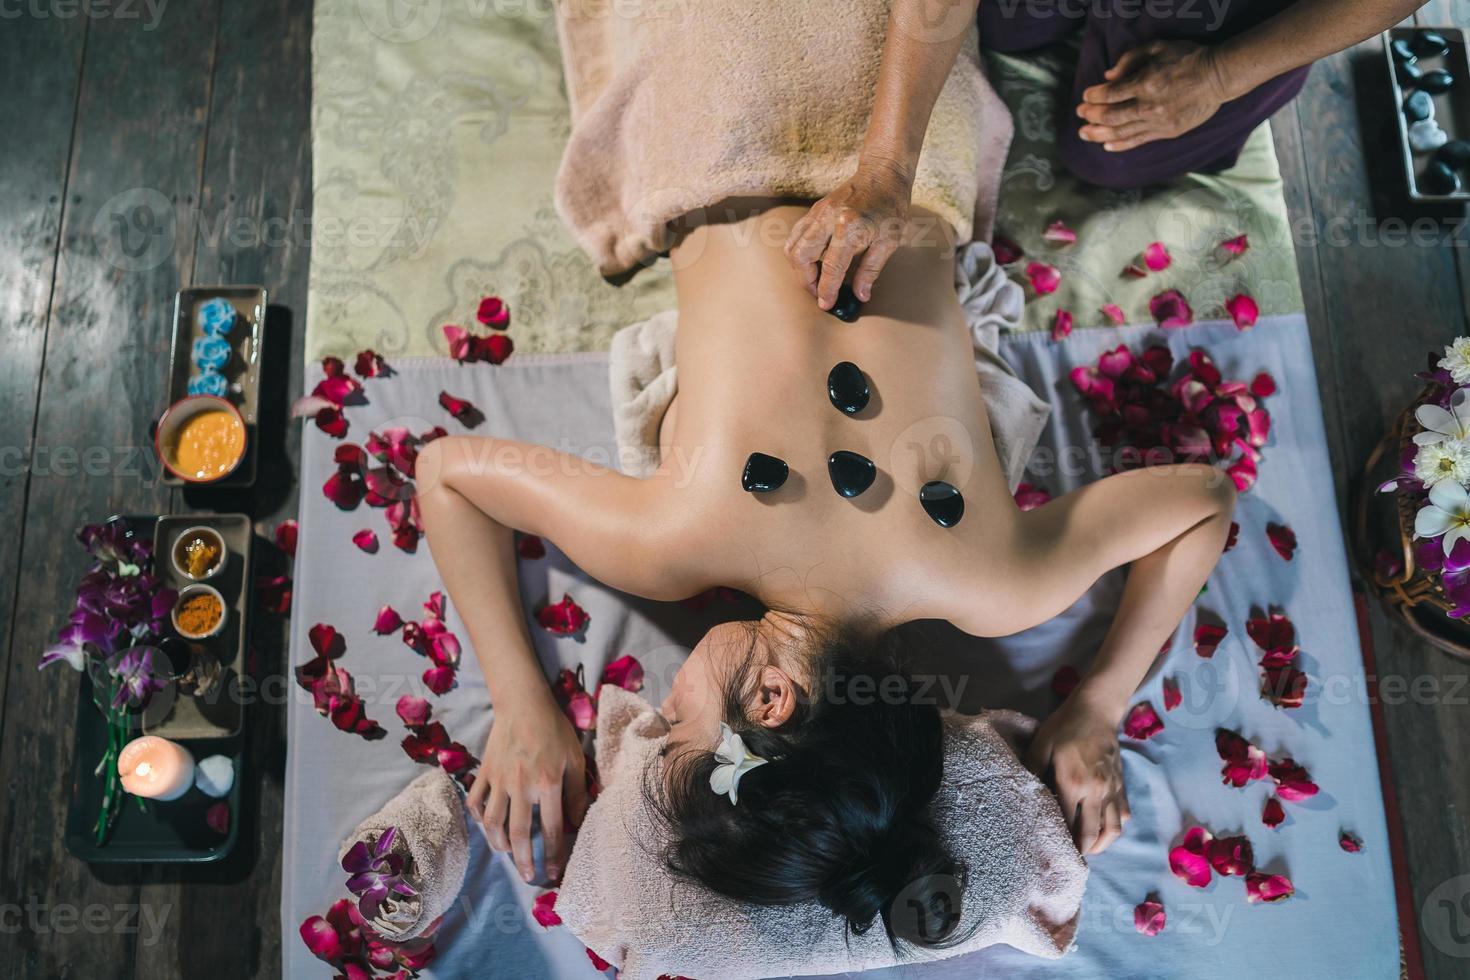 massage et spa traitement relaxant du syndrome de bureau en utilisant le style de massage thaï traditionnel aux pierres chaudes. asain femme masseuse faisant des massages traite les maux de dos, les douleurs au bras, le stress pour les femmes fatiguées du travail. photo